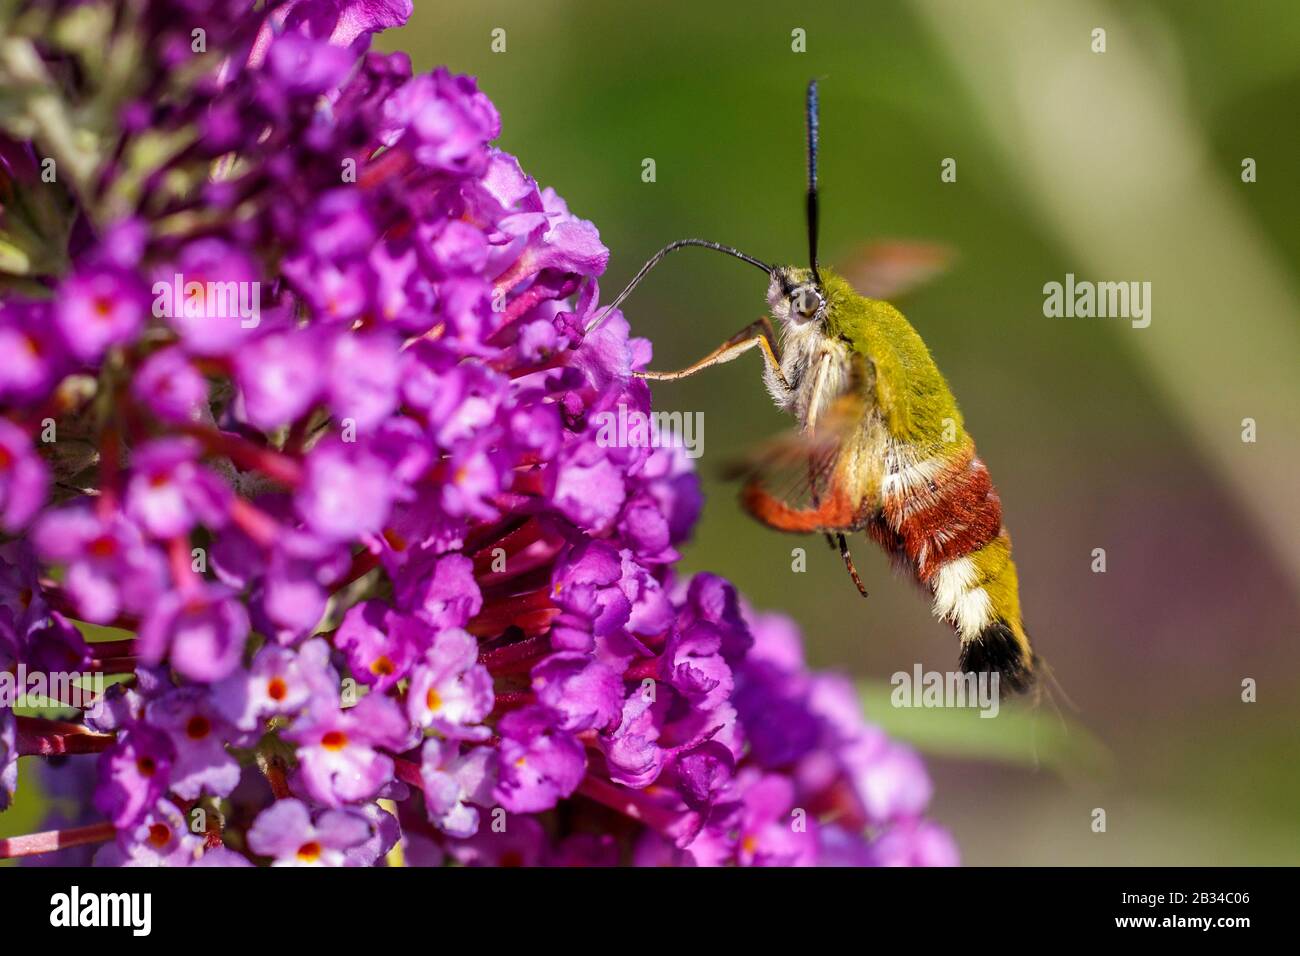 Broad-bordered bee hawk-moth, Broad-bordered bee hawkmoth (Hemaris fuciformis, Haemorrhagia fuciformis), sucking nectar on Buddleja flowers, Germany, Bavaria Stock Photo